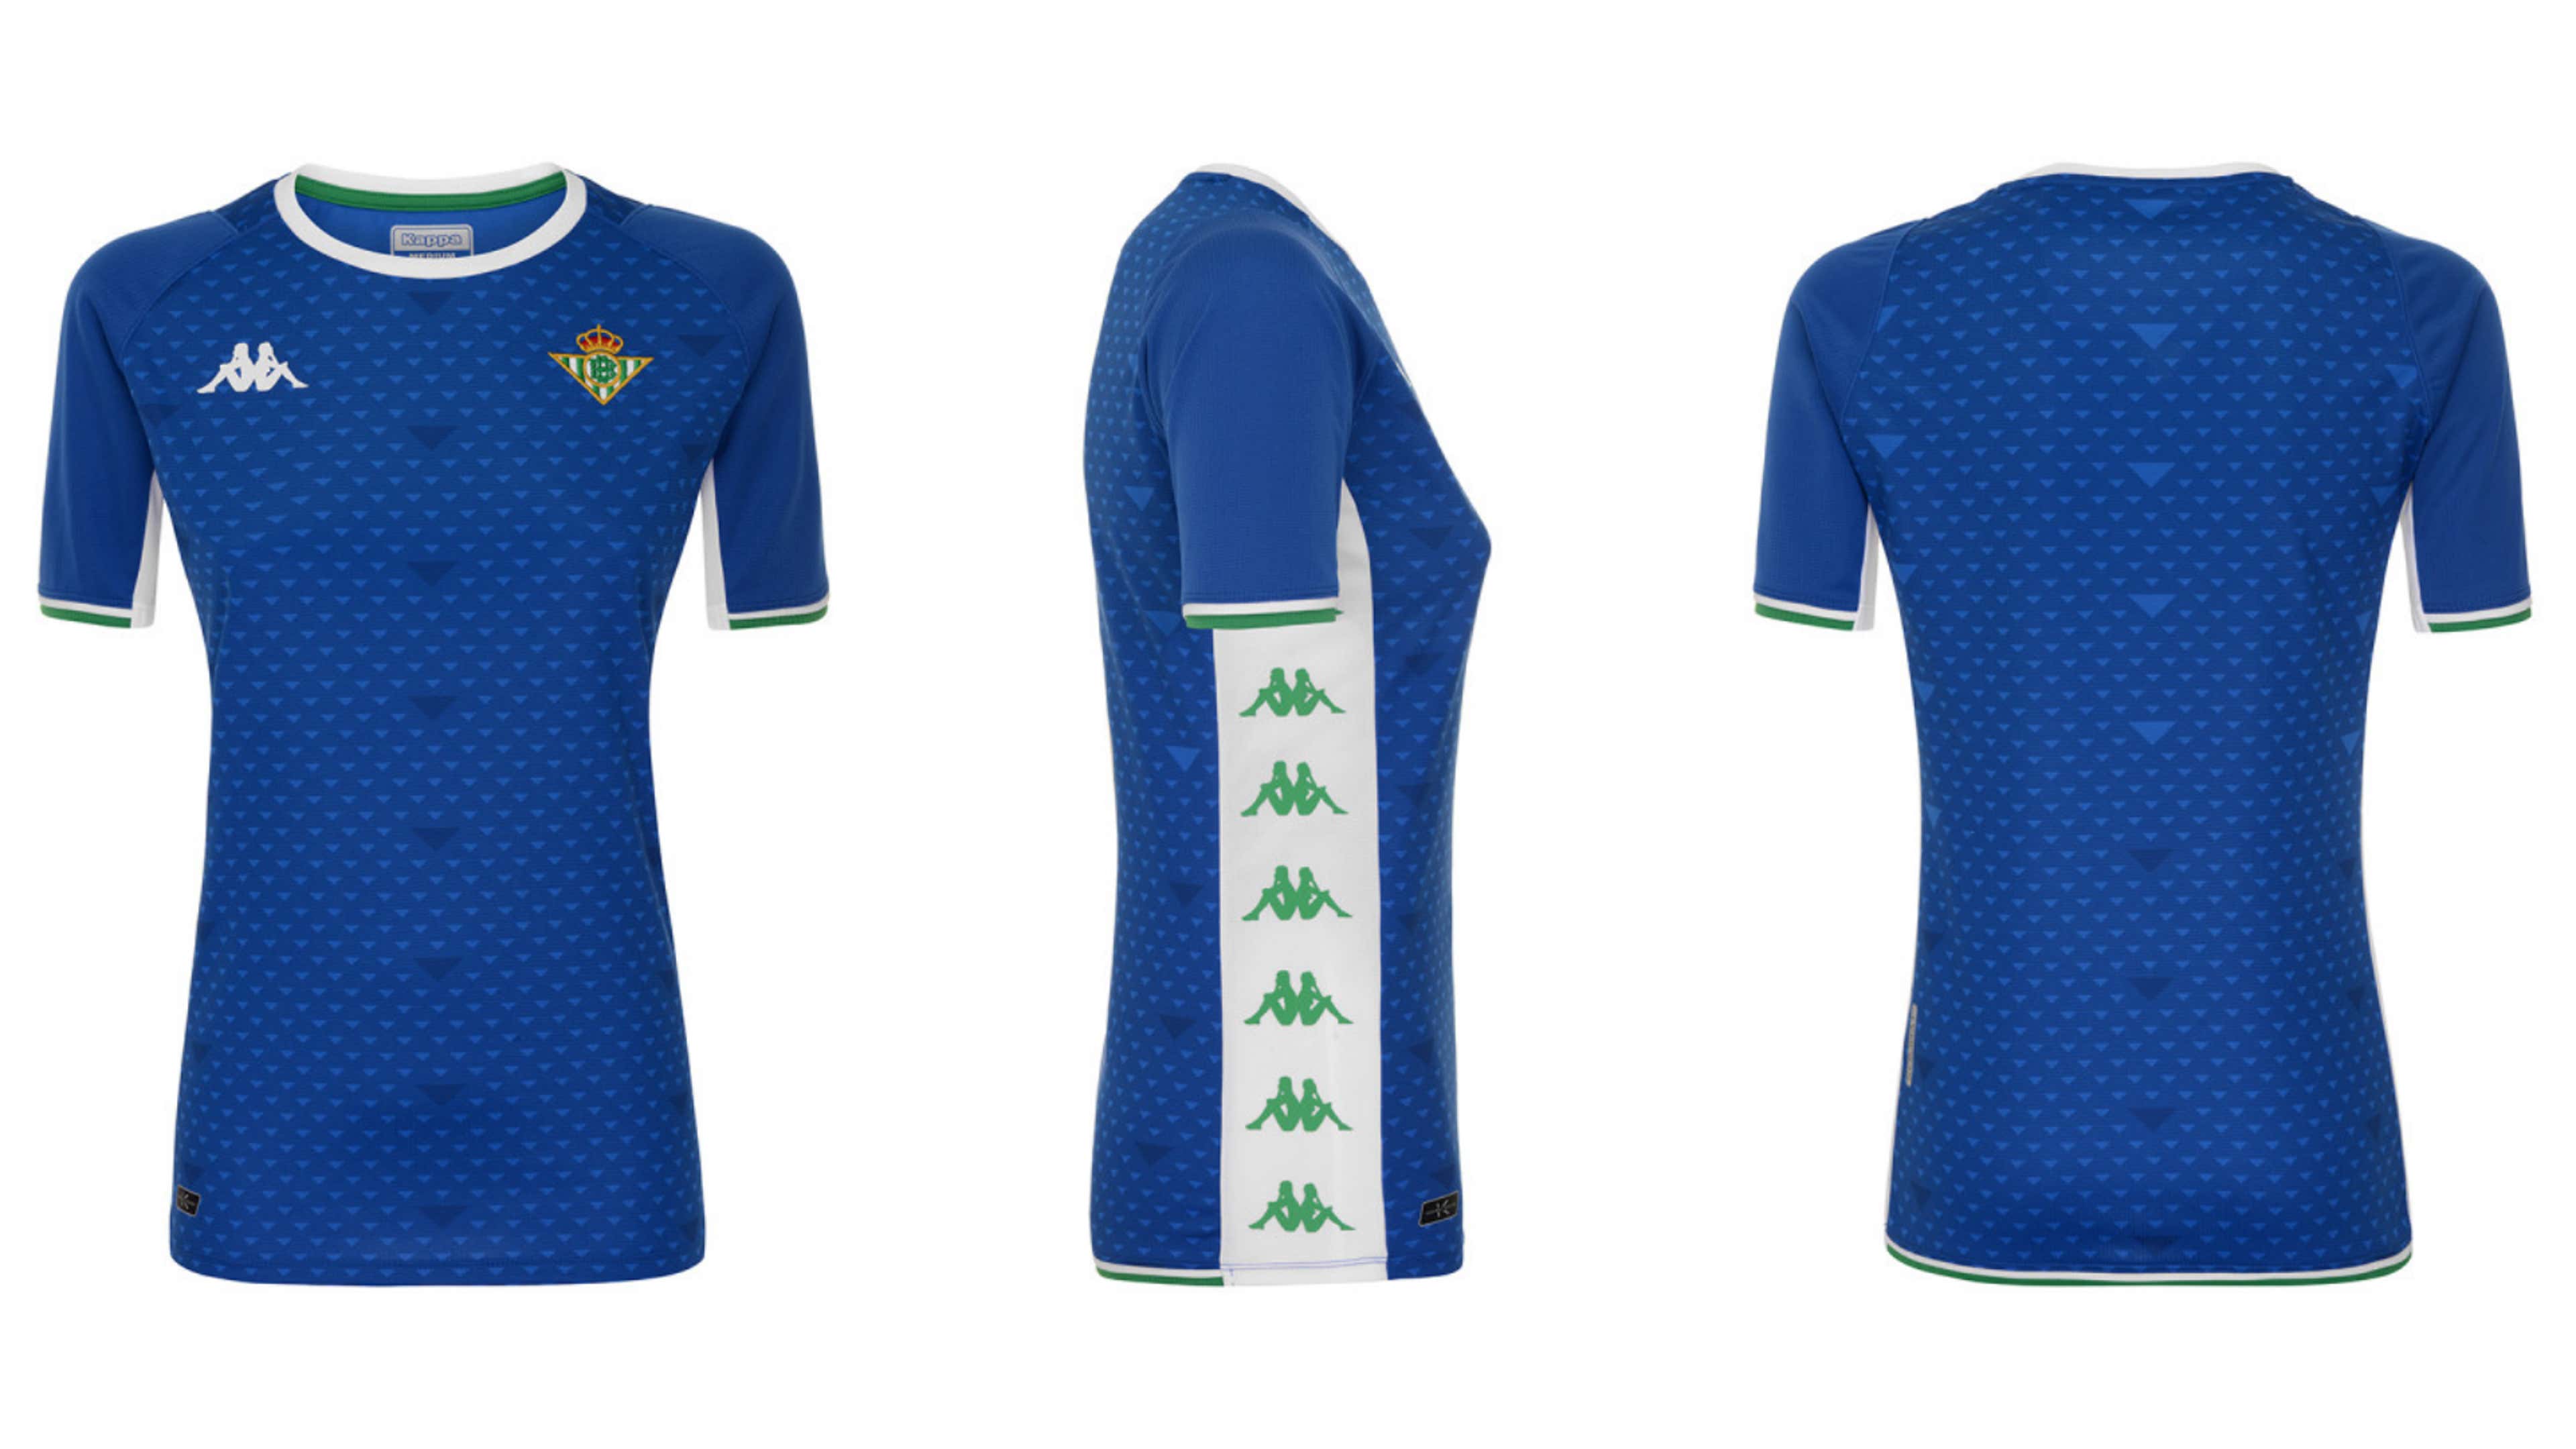 Camisetas y Equipaciones de Baloncesto Real Betis - Tienda Oficial – Real  Betis Balompié